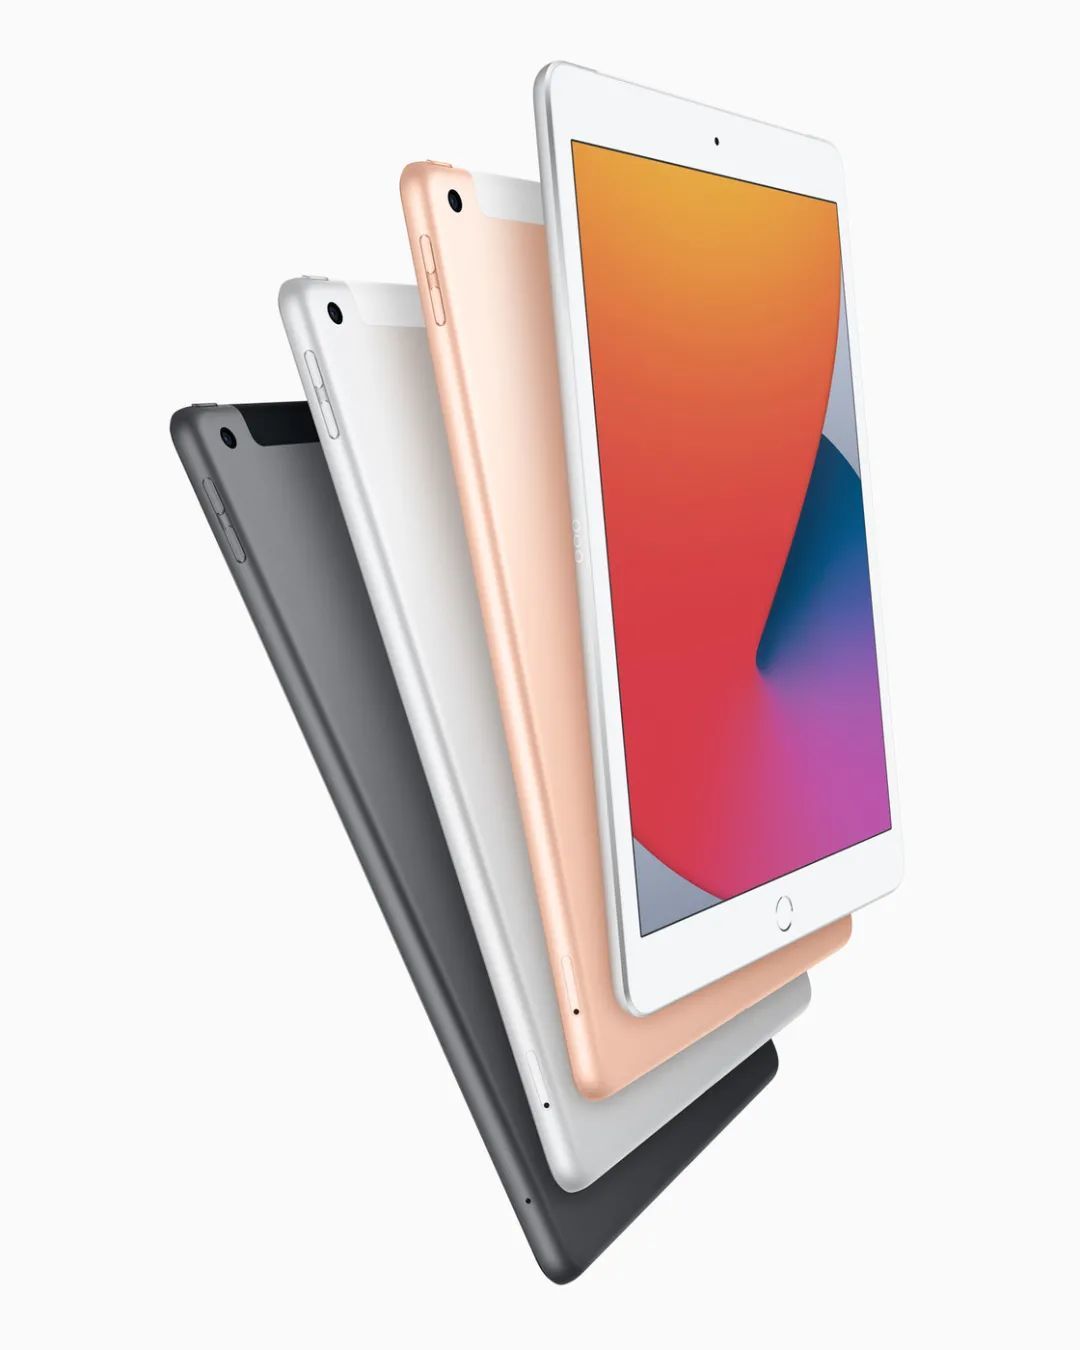 你也打算趁着双十一入手 iPad？我们告诉你哪款「性价比高」